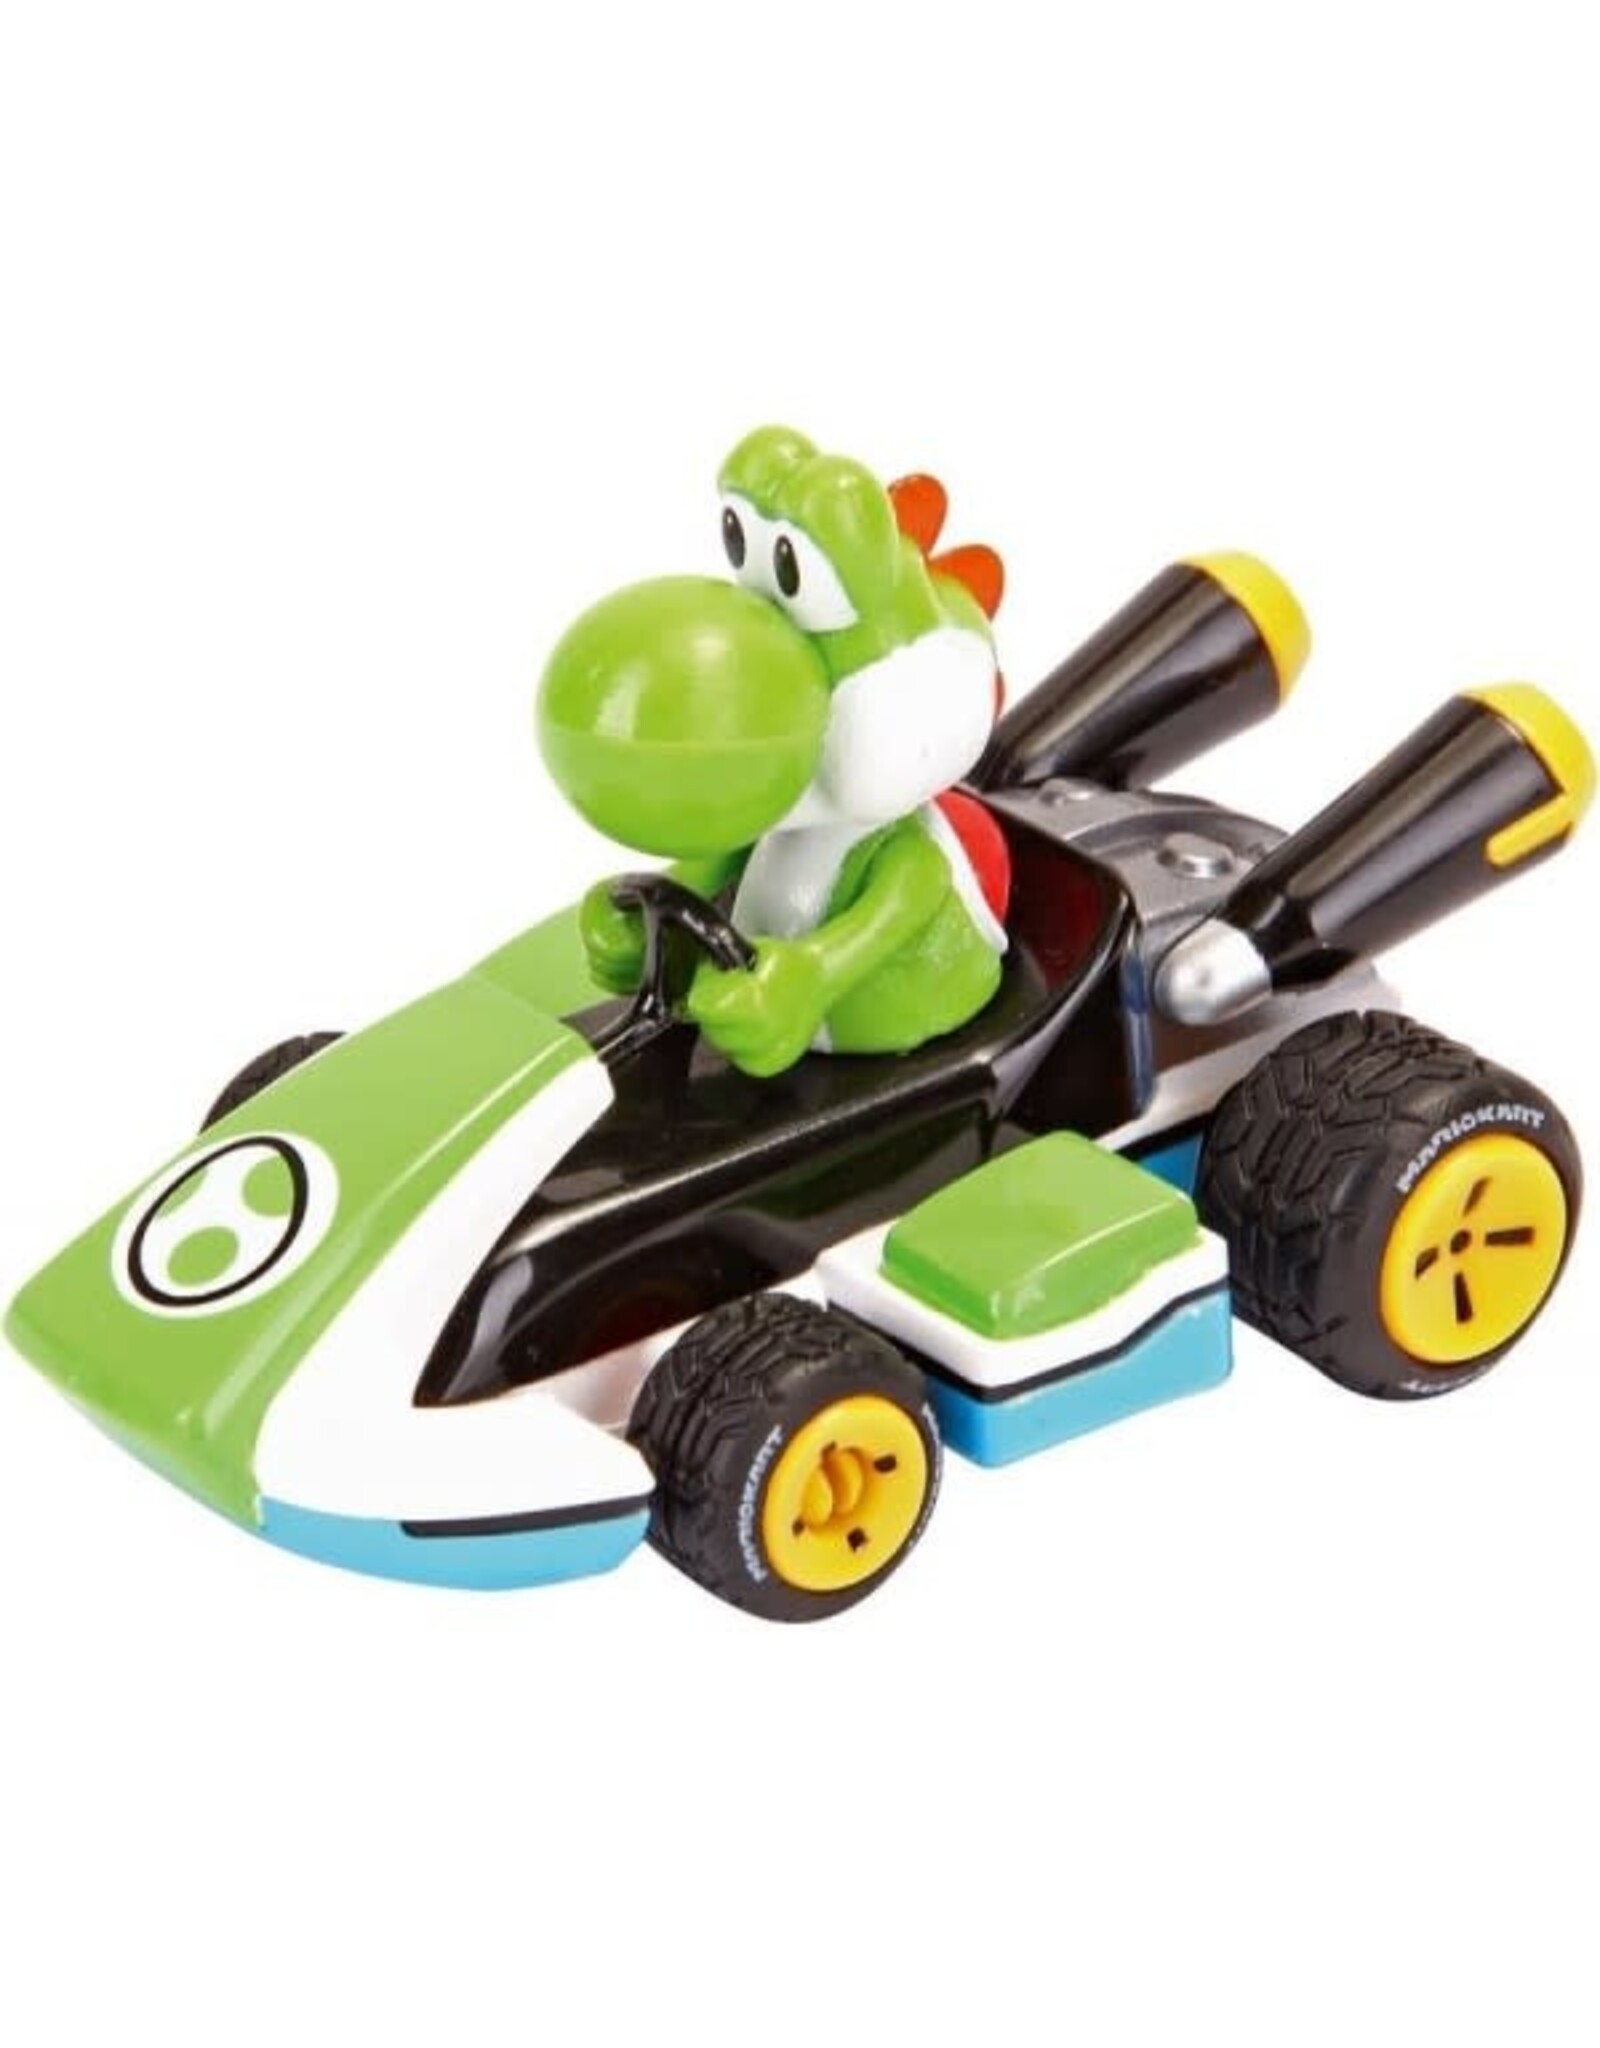 Carrera Pull & Speed Mario Kart - Yoshi